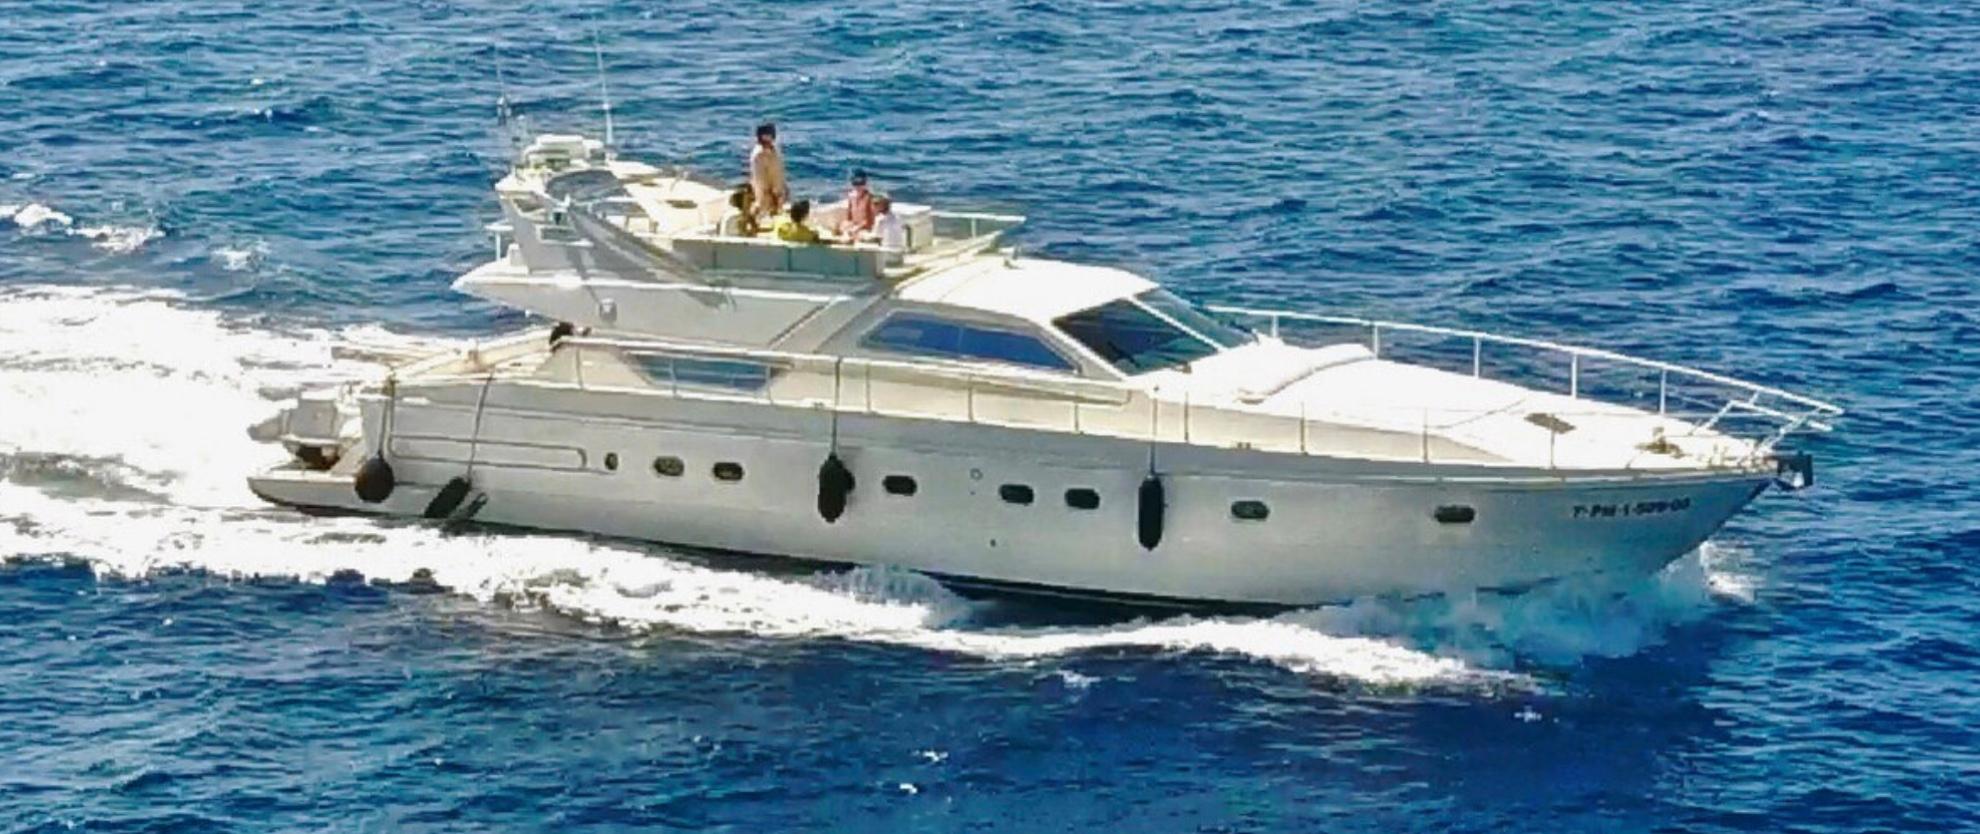 1996 Ferretti Yachts 175